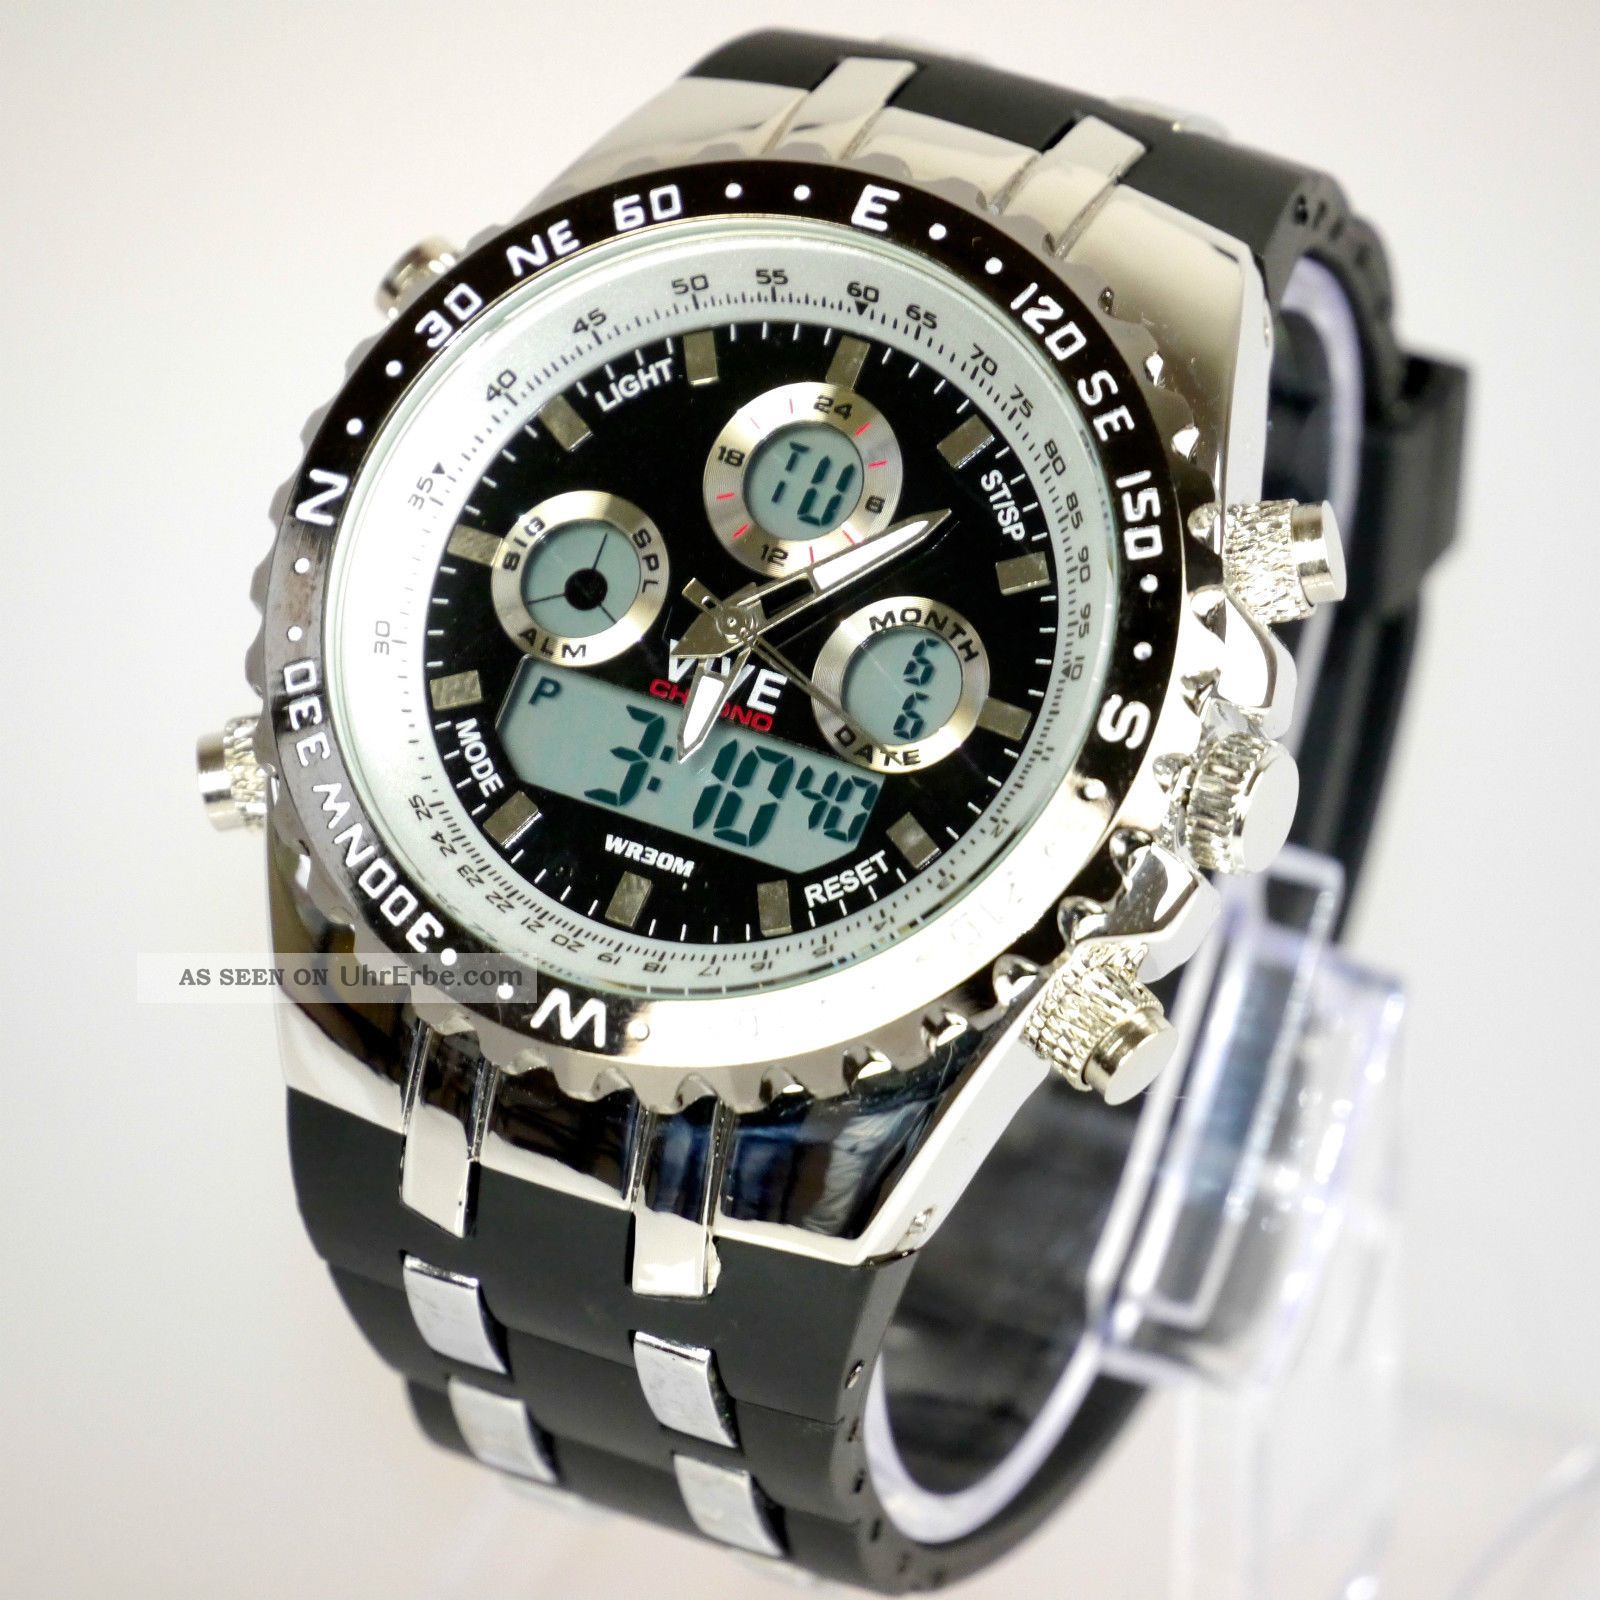 Herren Vive Armband Uhr Hartplastik Schwarz Watch Analog Digital Quarz 2 Armbanduhren Bild